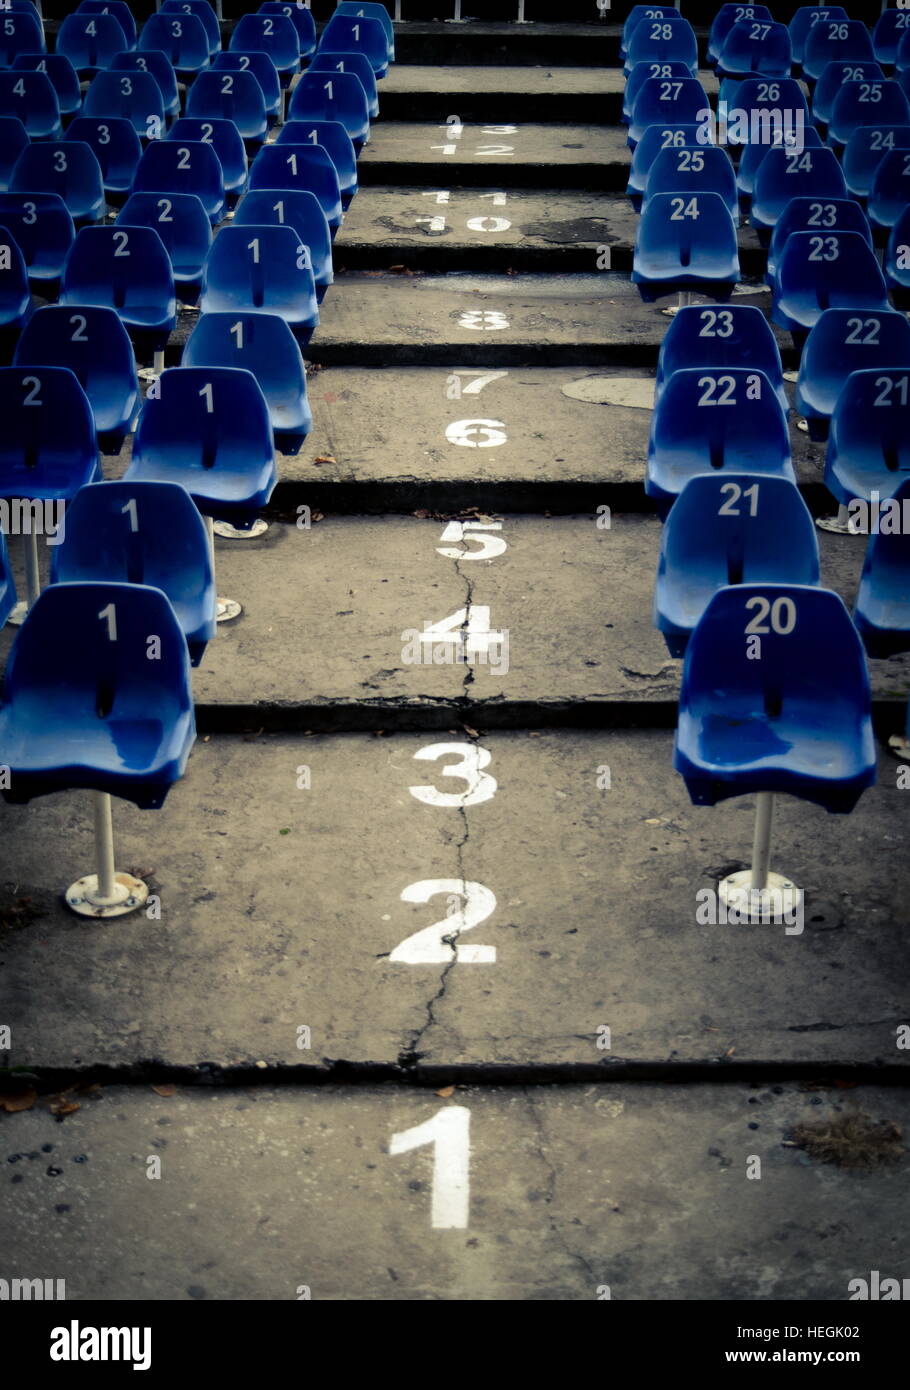 L'auditorium vide avec des chaises en plastique numérotés bleu Banque D'Images